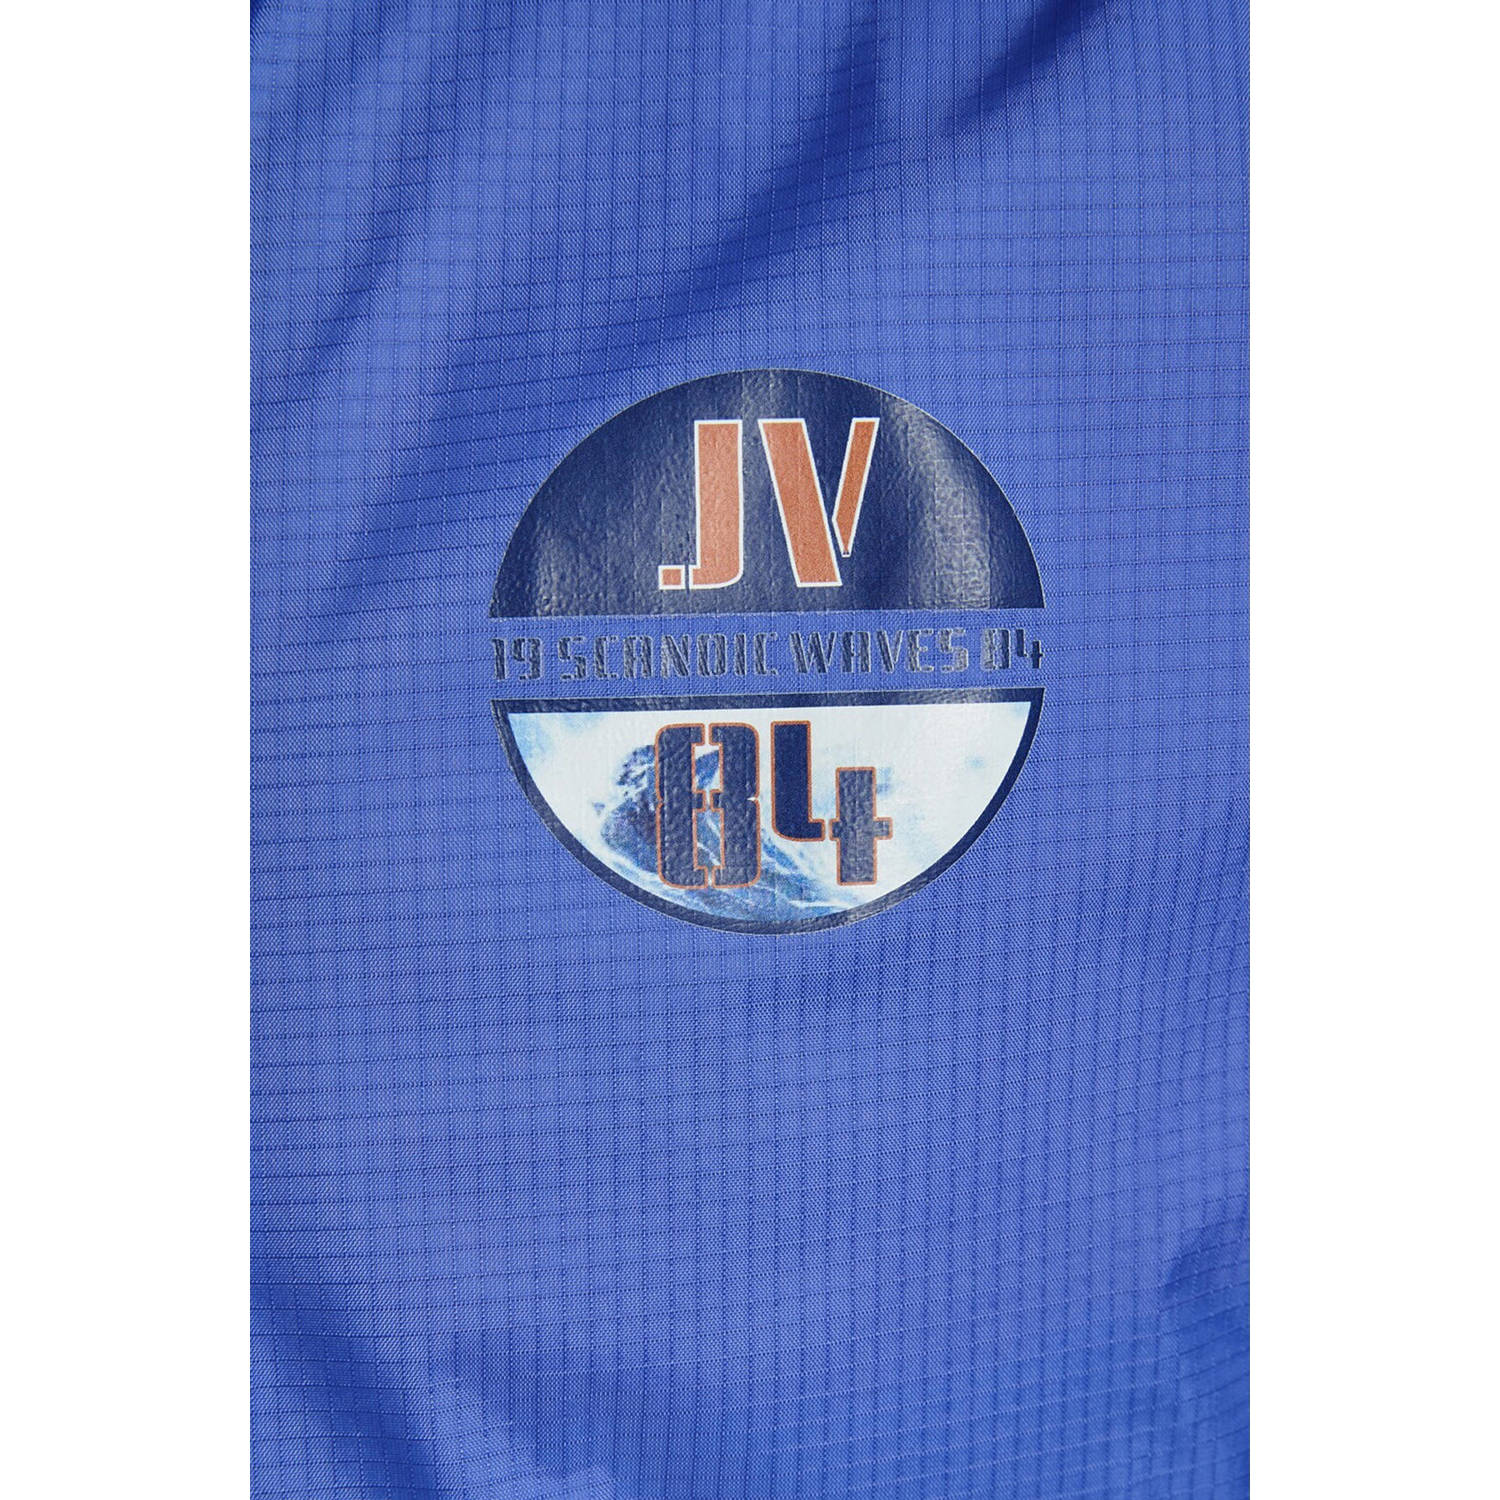 Jan Vanderstorm jas DIRCH Plus Size met logo blauw